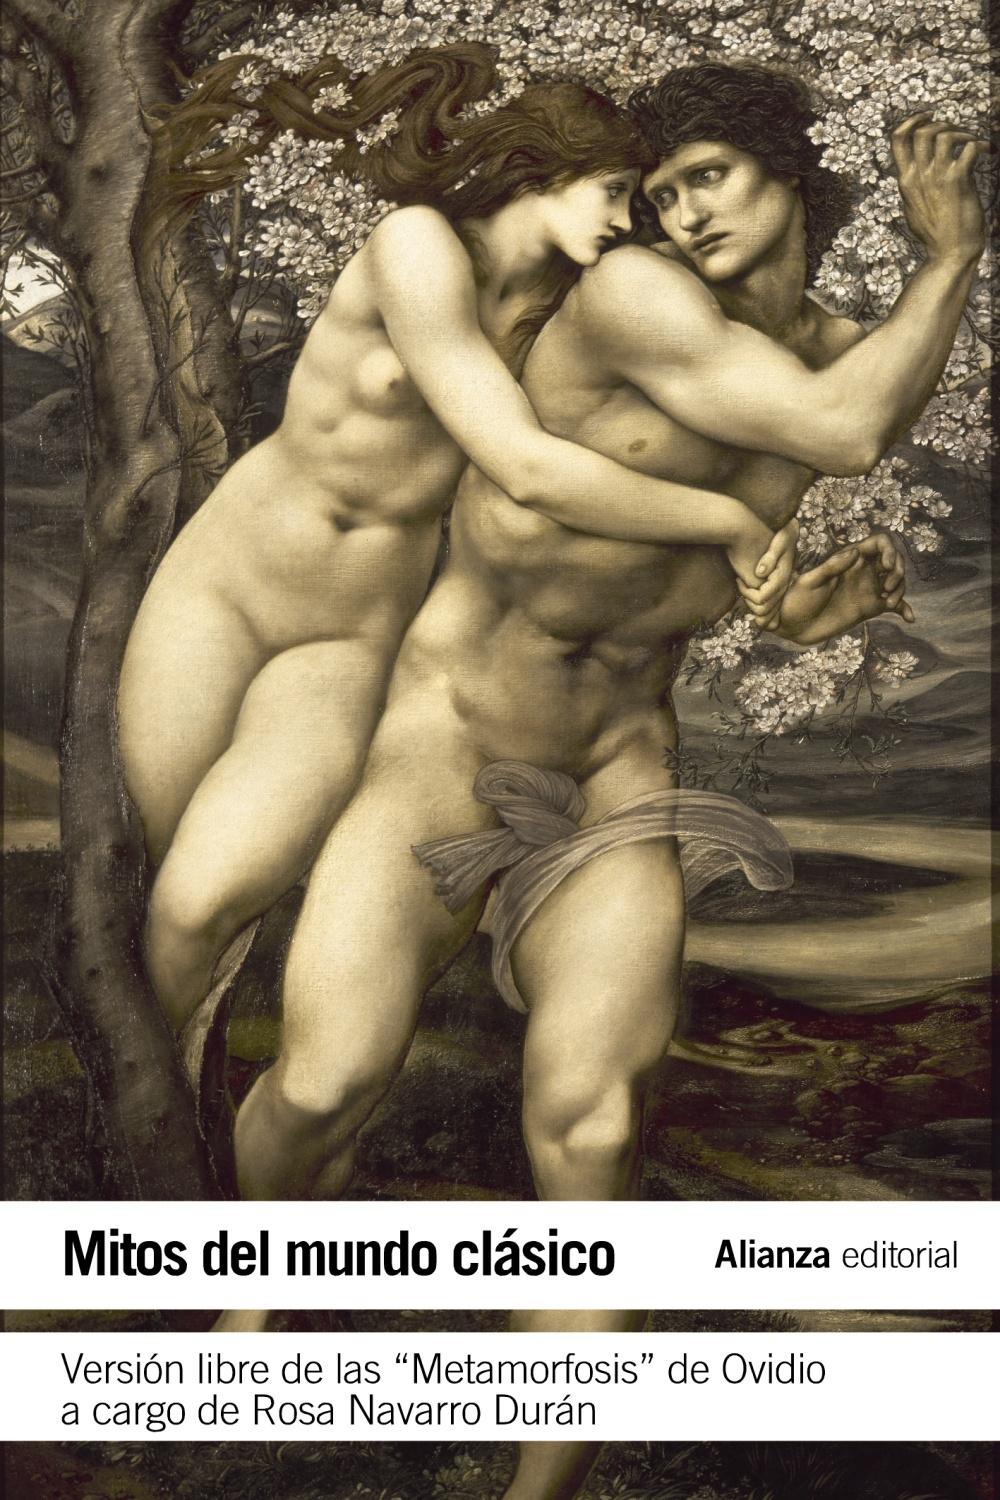 Mitos del mundo clásico "versión libre de las Metamorfosis de Ovidio". 